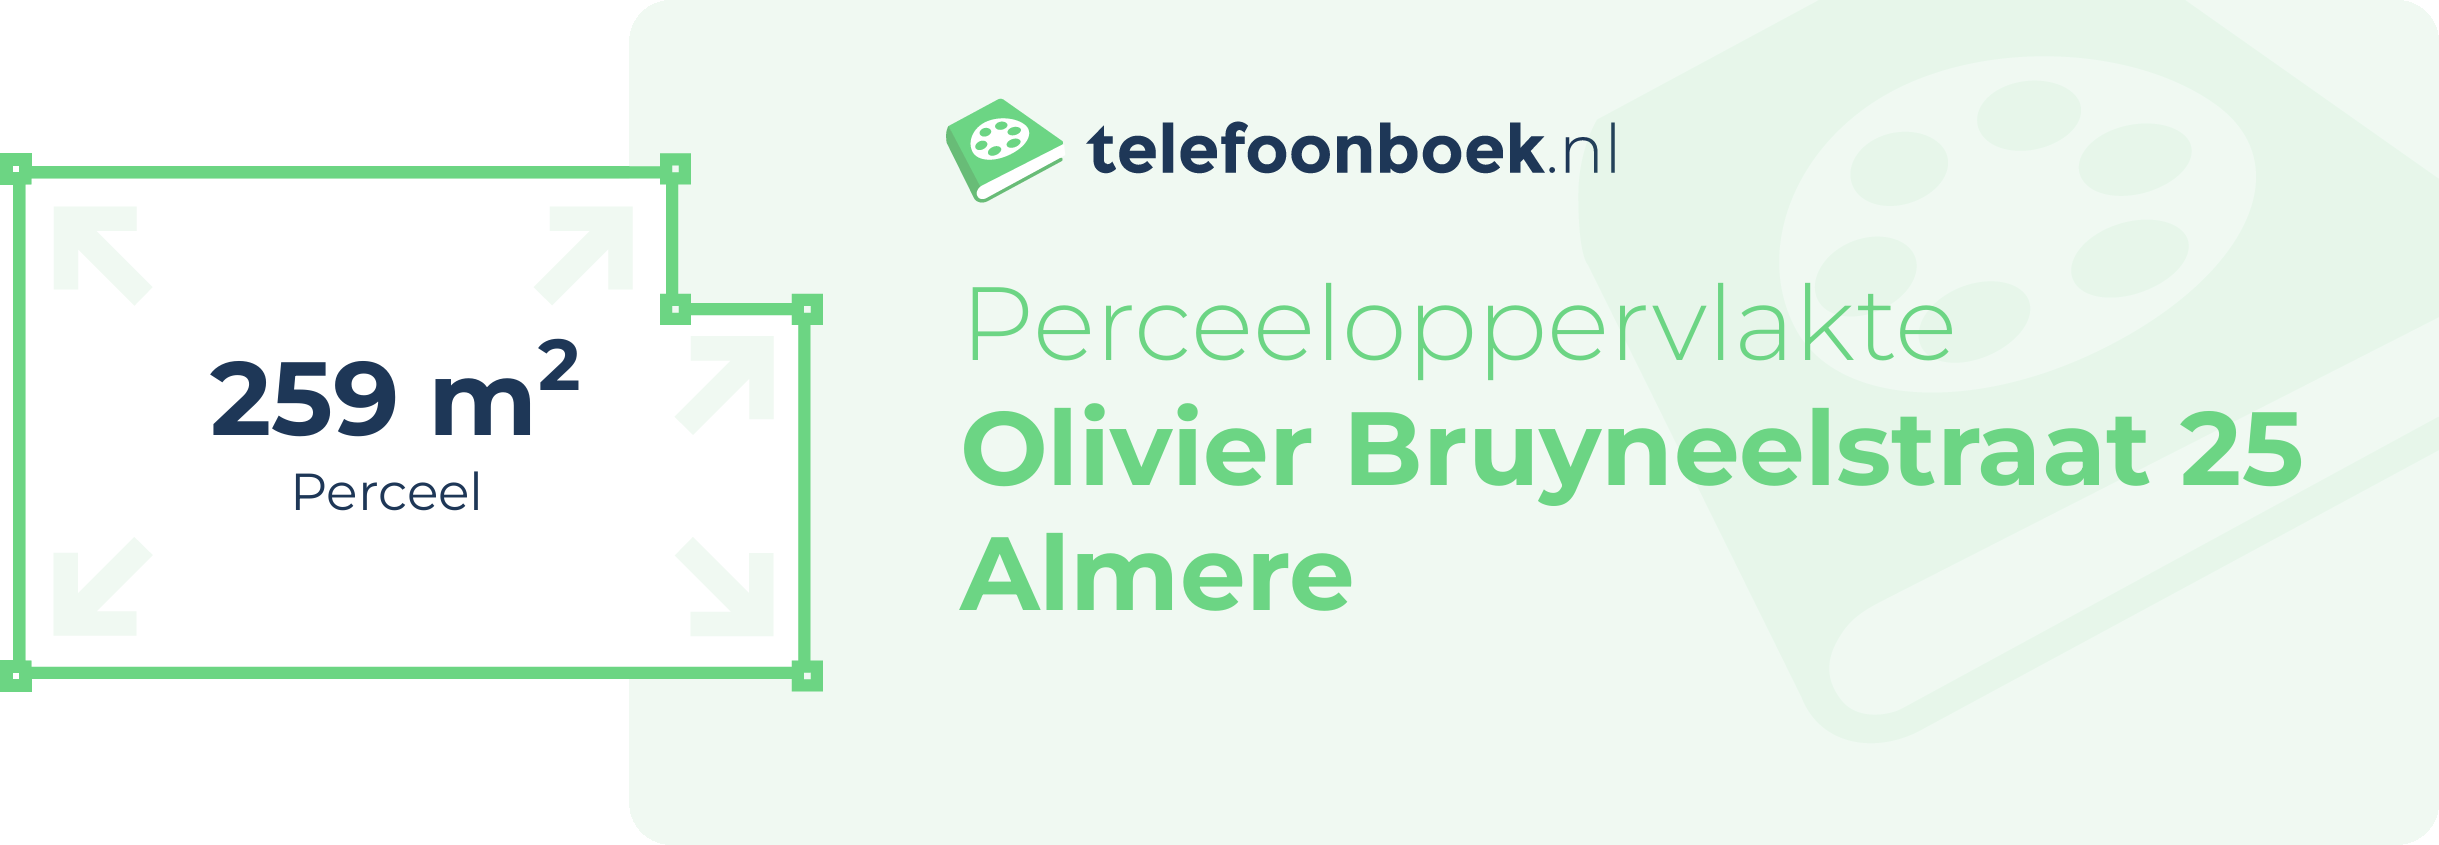 Perceeloppervlakte Olivier Bruyneelstraat 25 Almere